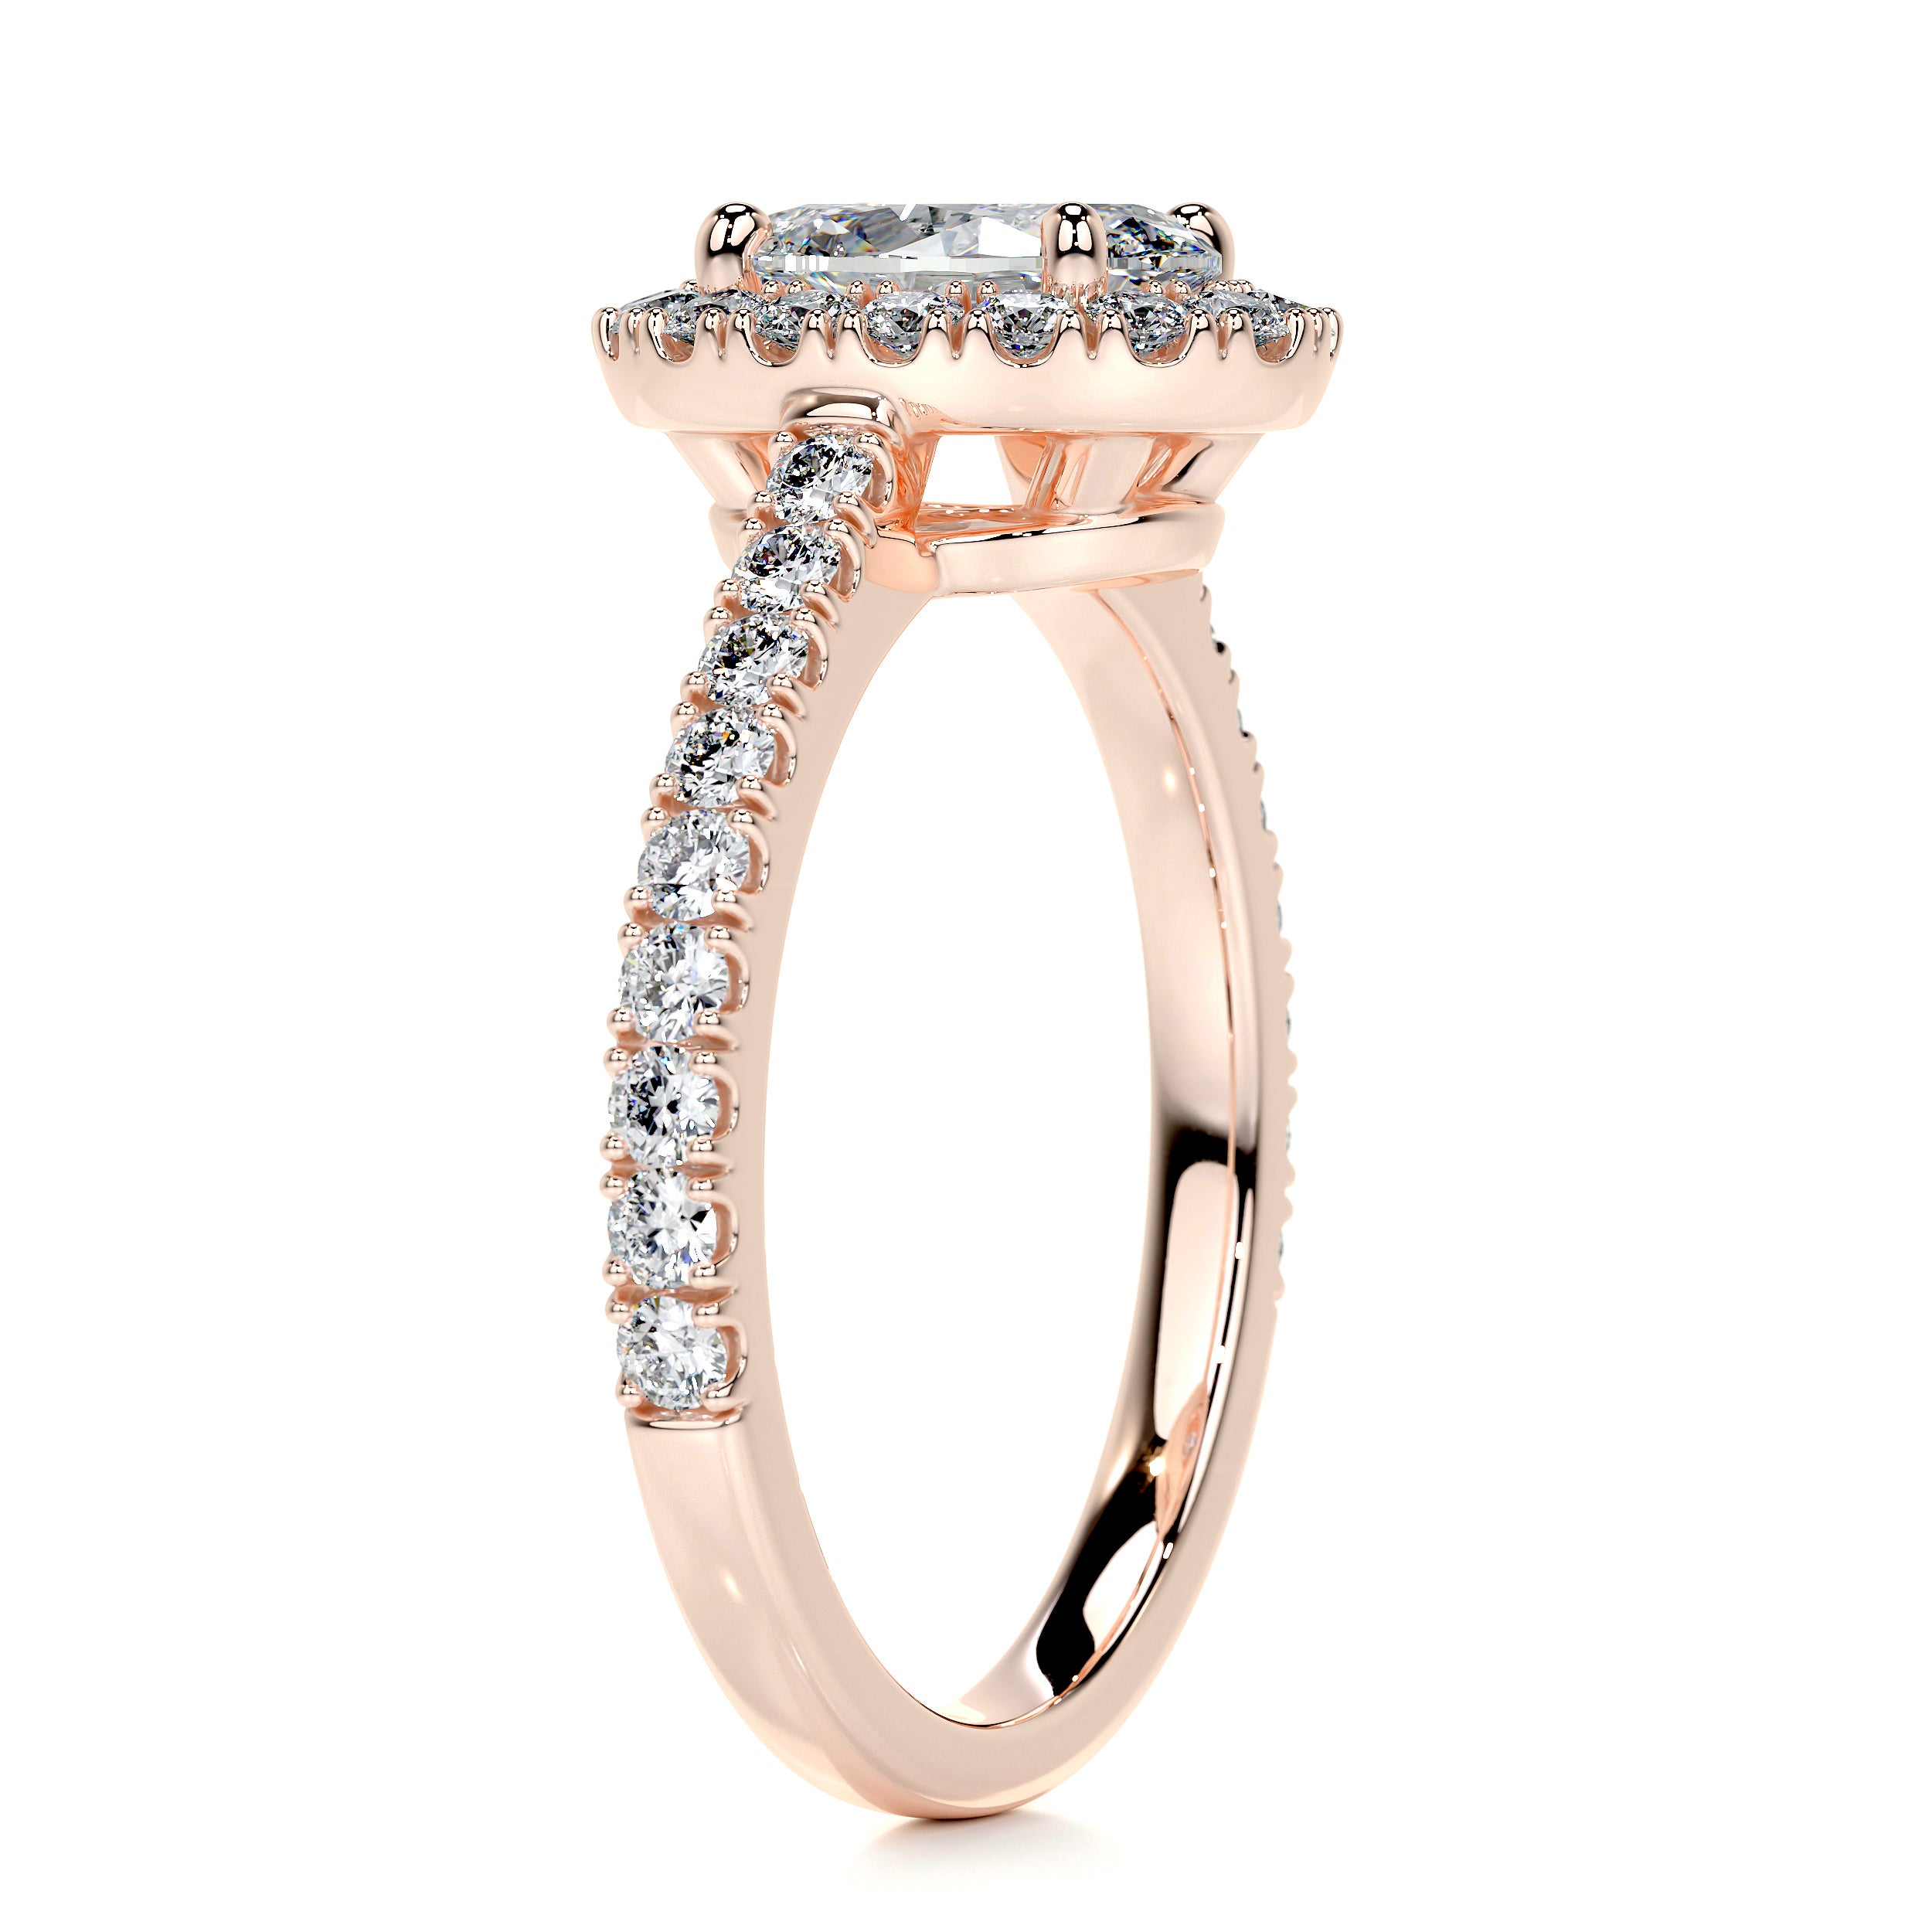 Maria Diamond Engagement Ring -14K Rose Gold